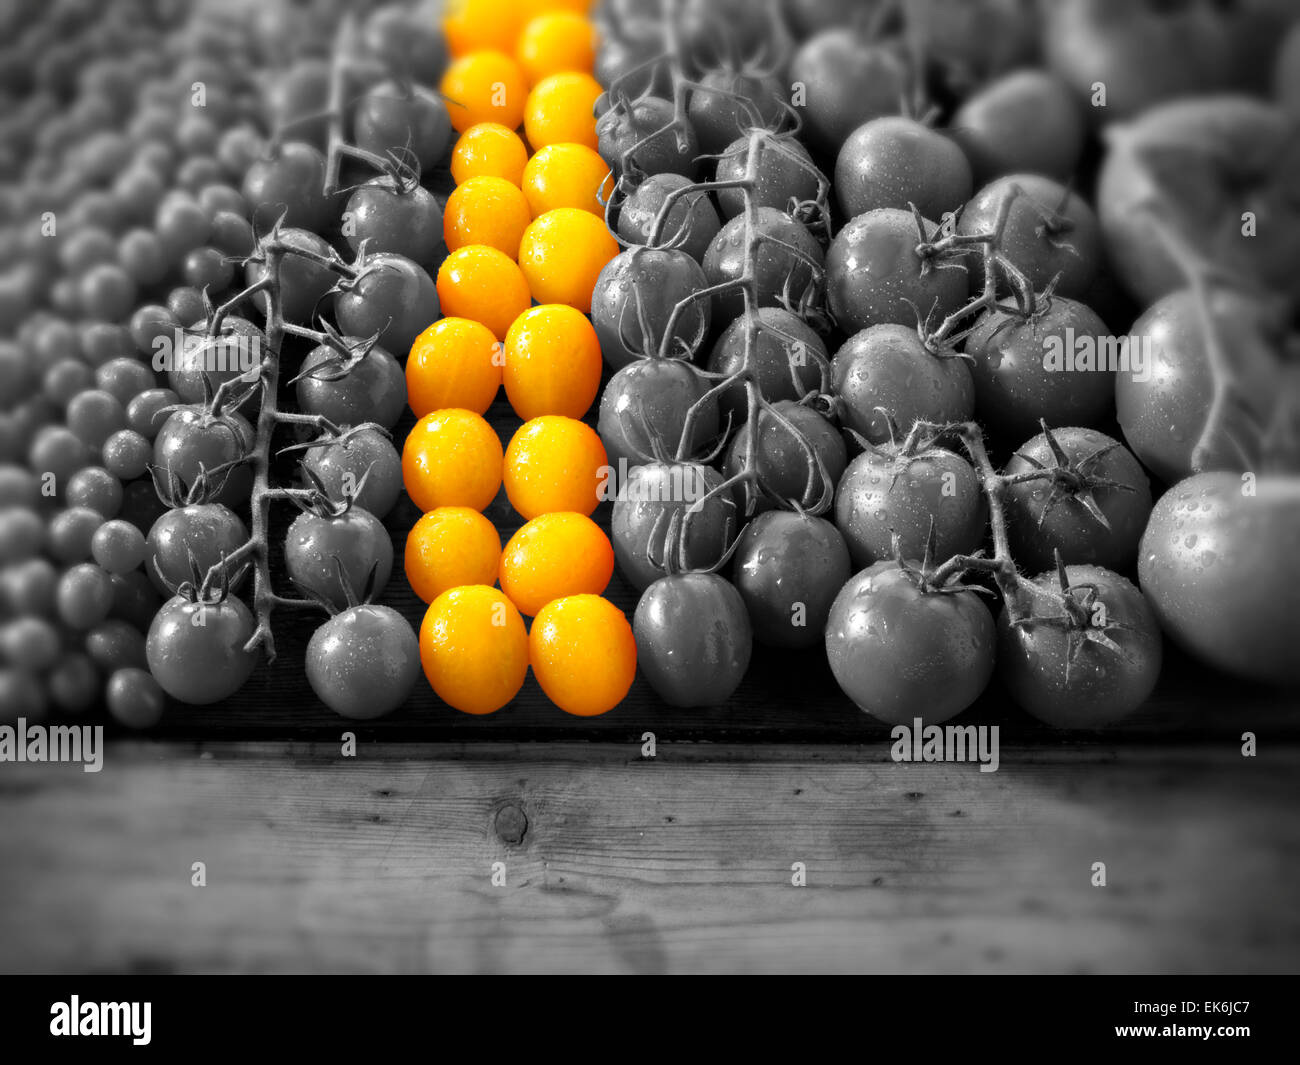 Eine Reihe von gelben Tomaten unter anderen gemischten Tomaten in schwarz und weiß (selektive Farbkorrektur) Stockfoto